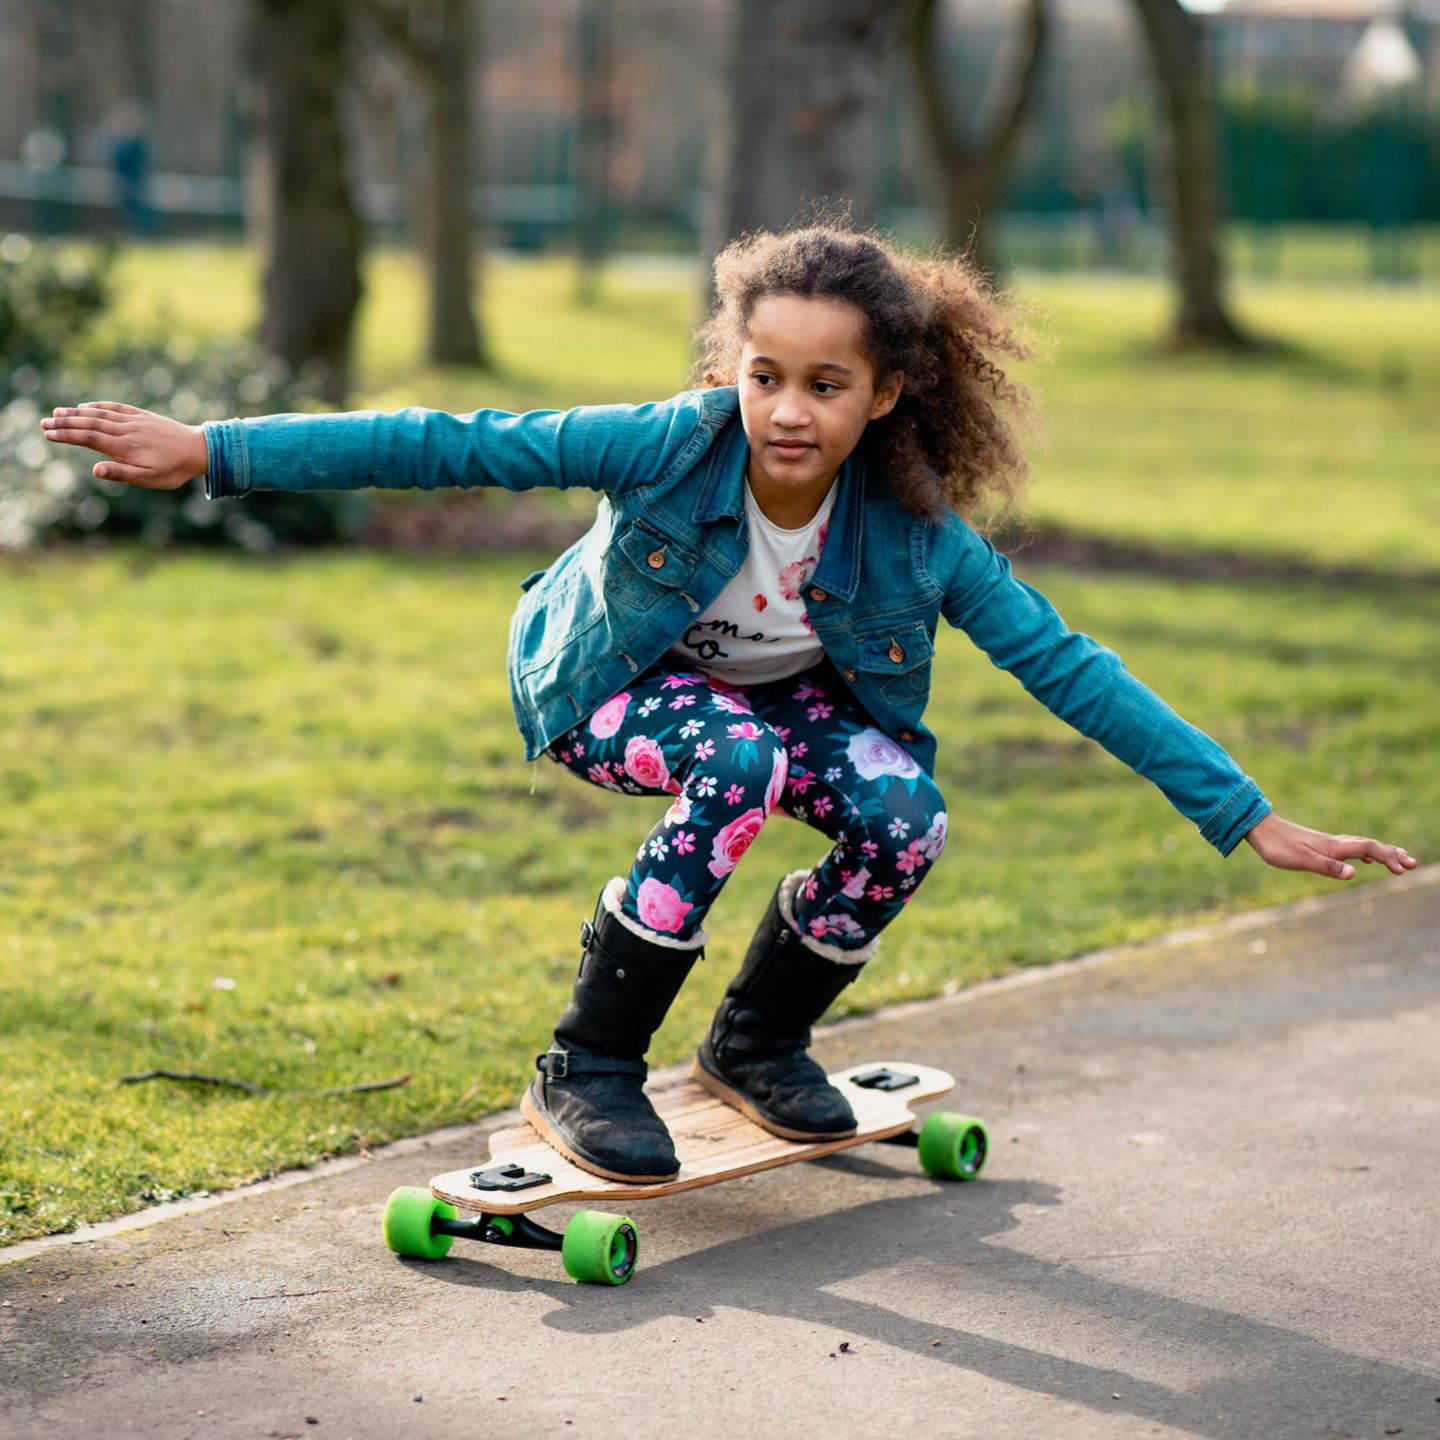 defect Gehoorzaamheid Weven Skateboards für Kinder & Jugendliche: Das passende Modell finden | STERN.de